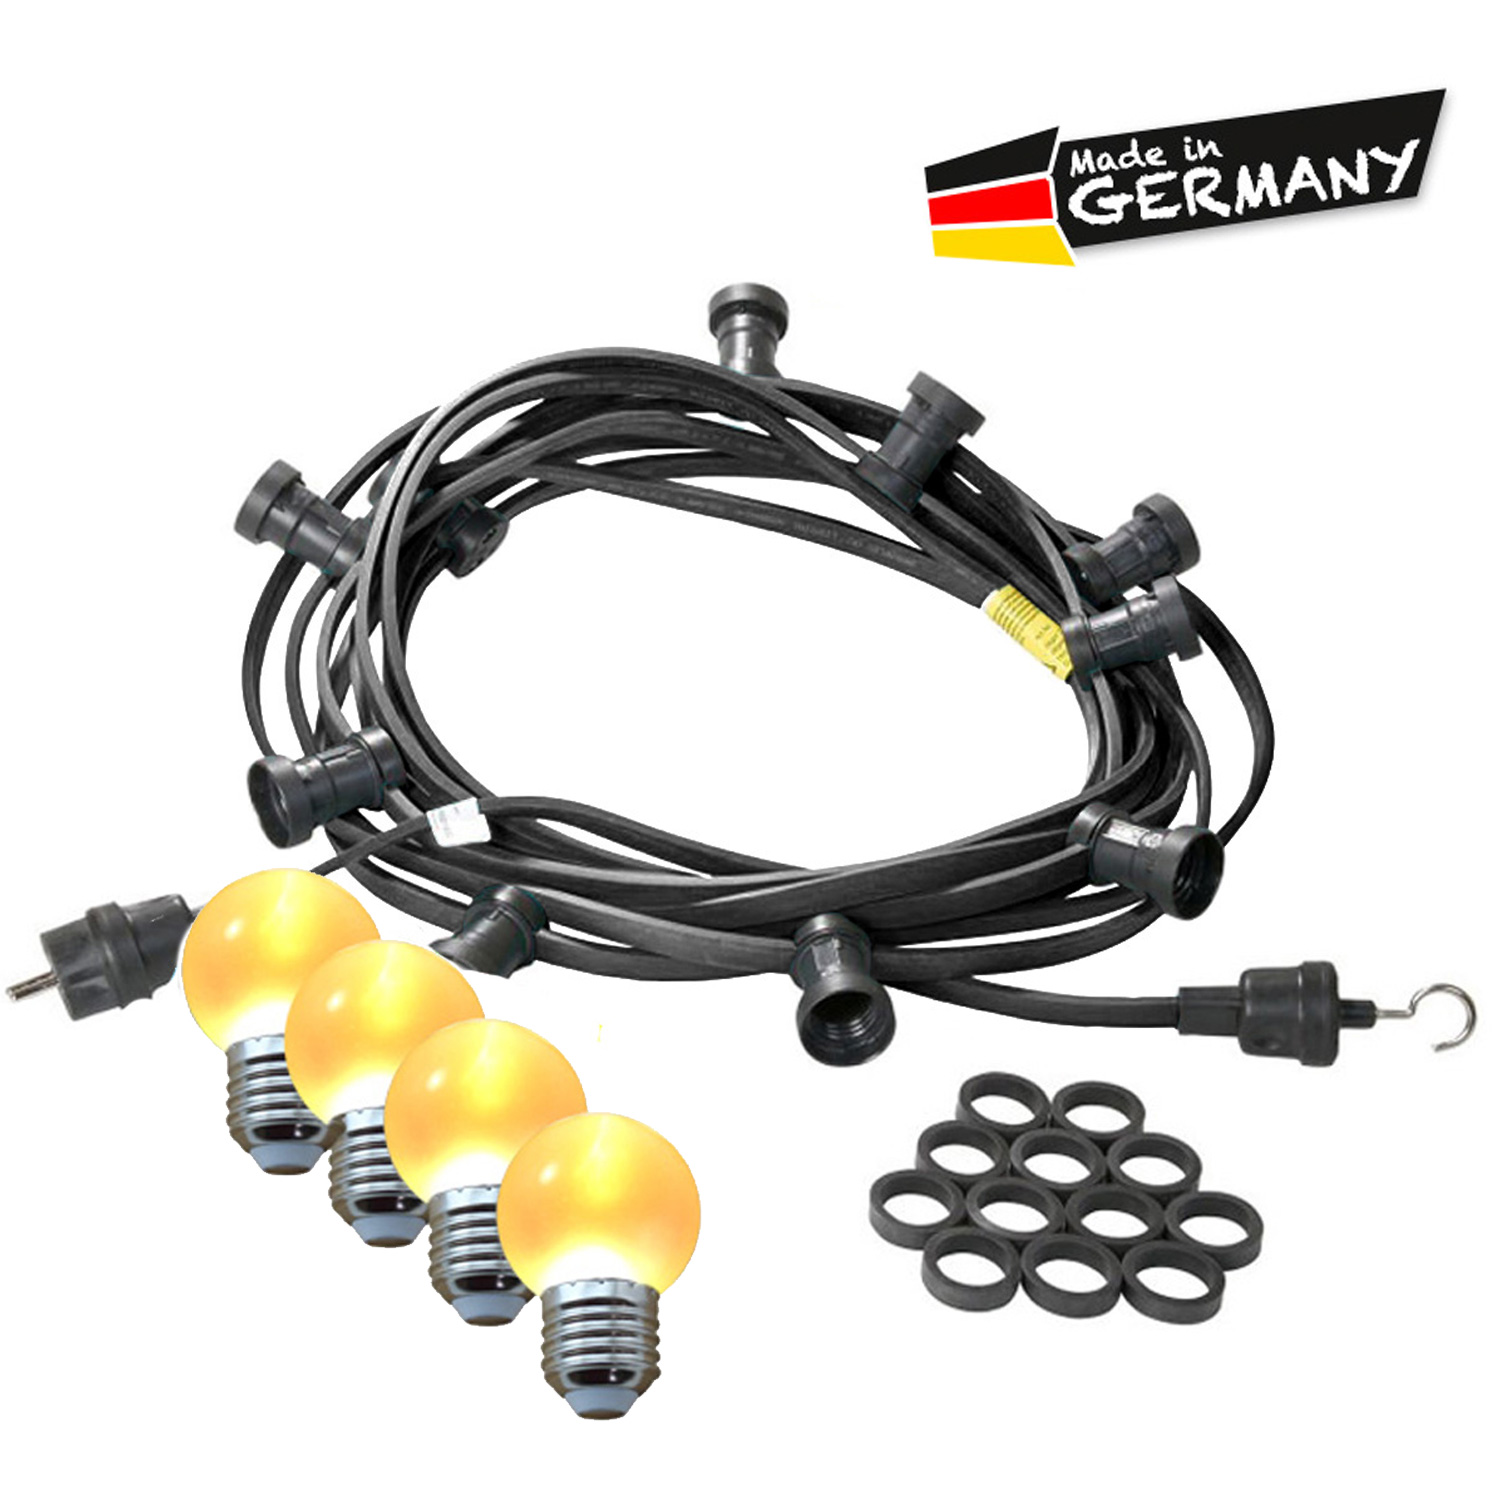 Illu-/Partylichterkette 10m - Außenlichterkette - Made in Germany - 30 x ultra-warmweiße LED Kugeln